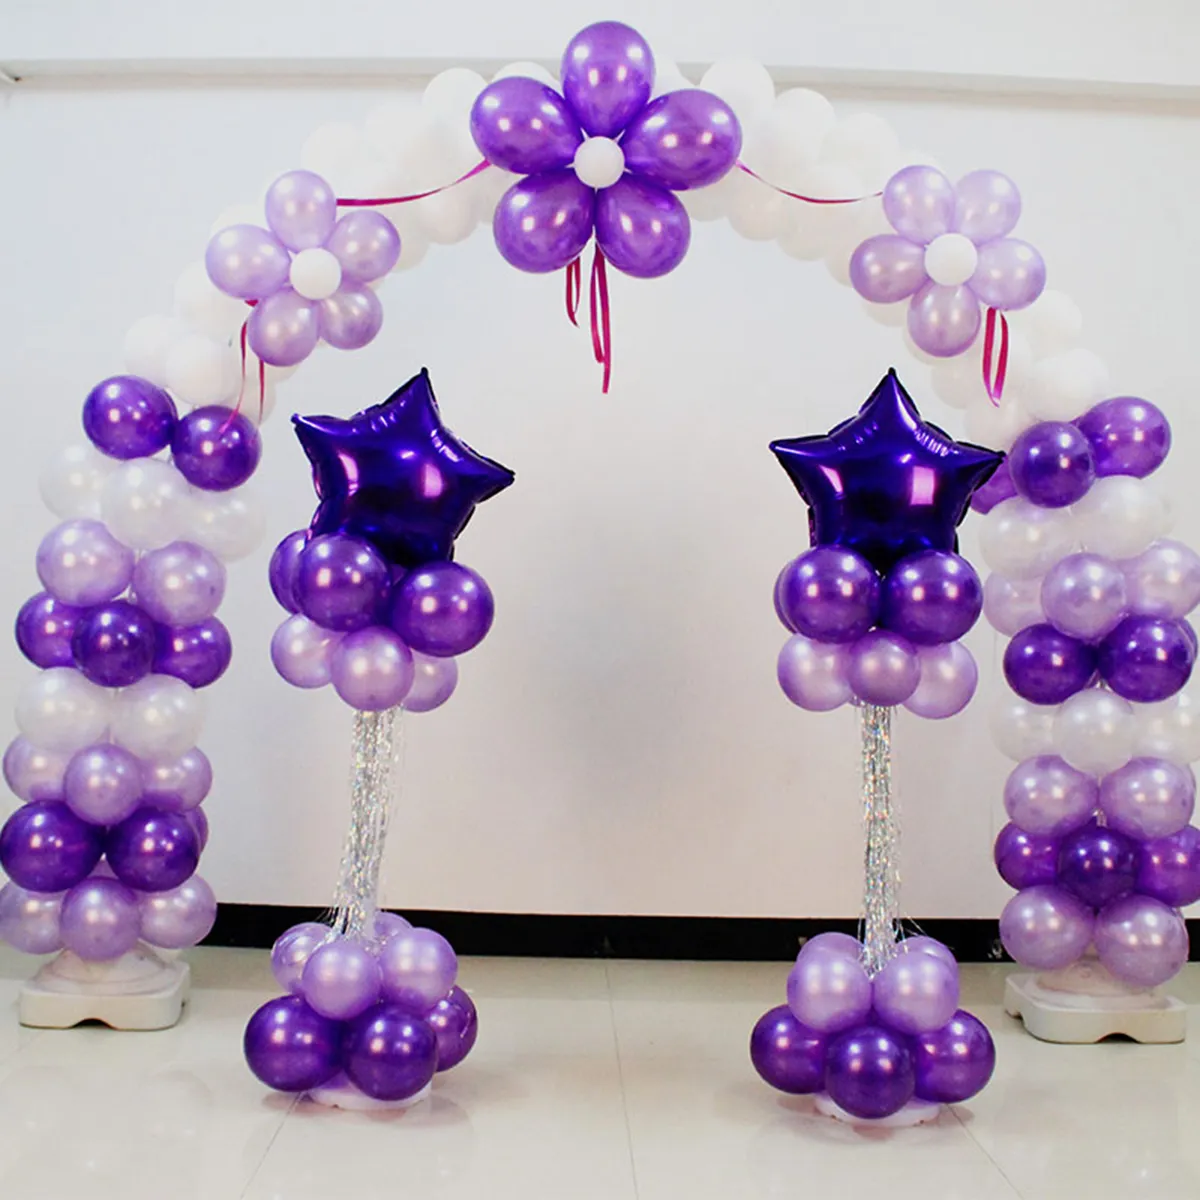 4st Balloon Column Stand Kits Arch Stand med rambas och pol för bröllopsfestdekoration Q1904294559809